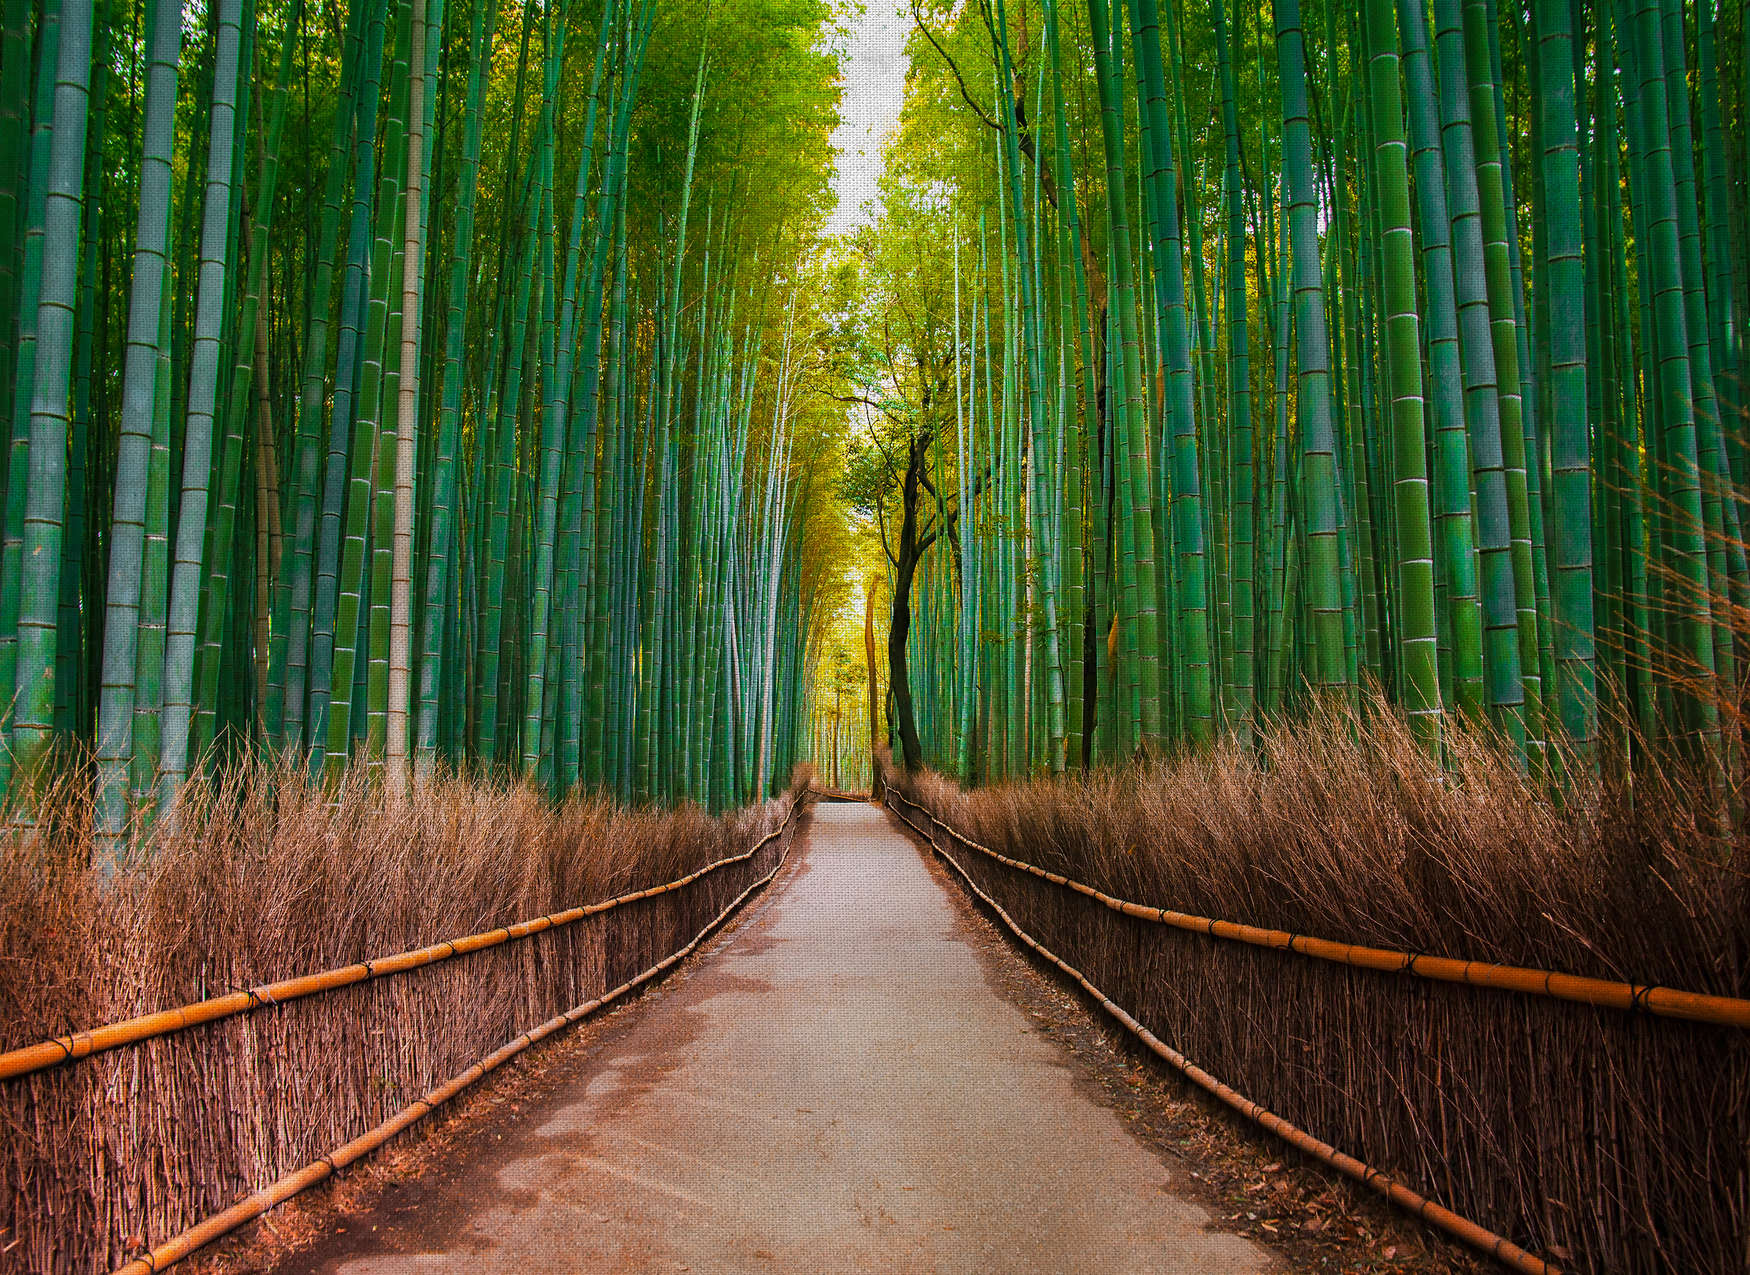             Carta da parati naturale con sentiero di bambù - verde, marrone
        